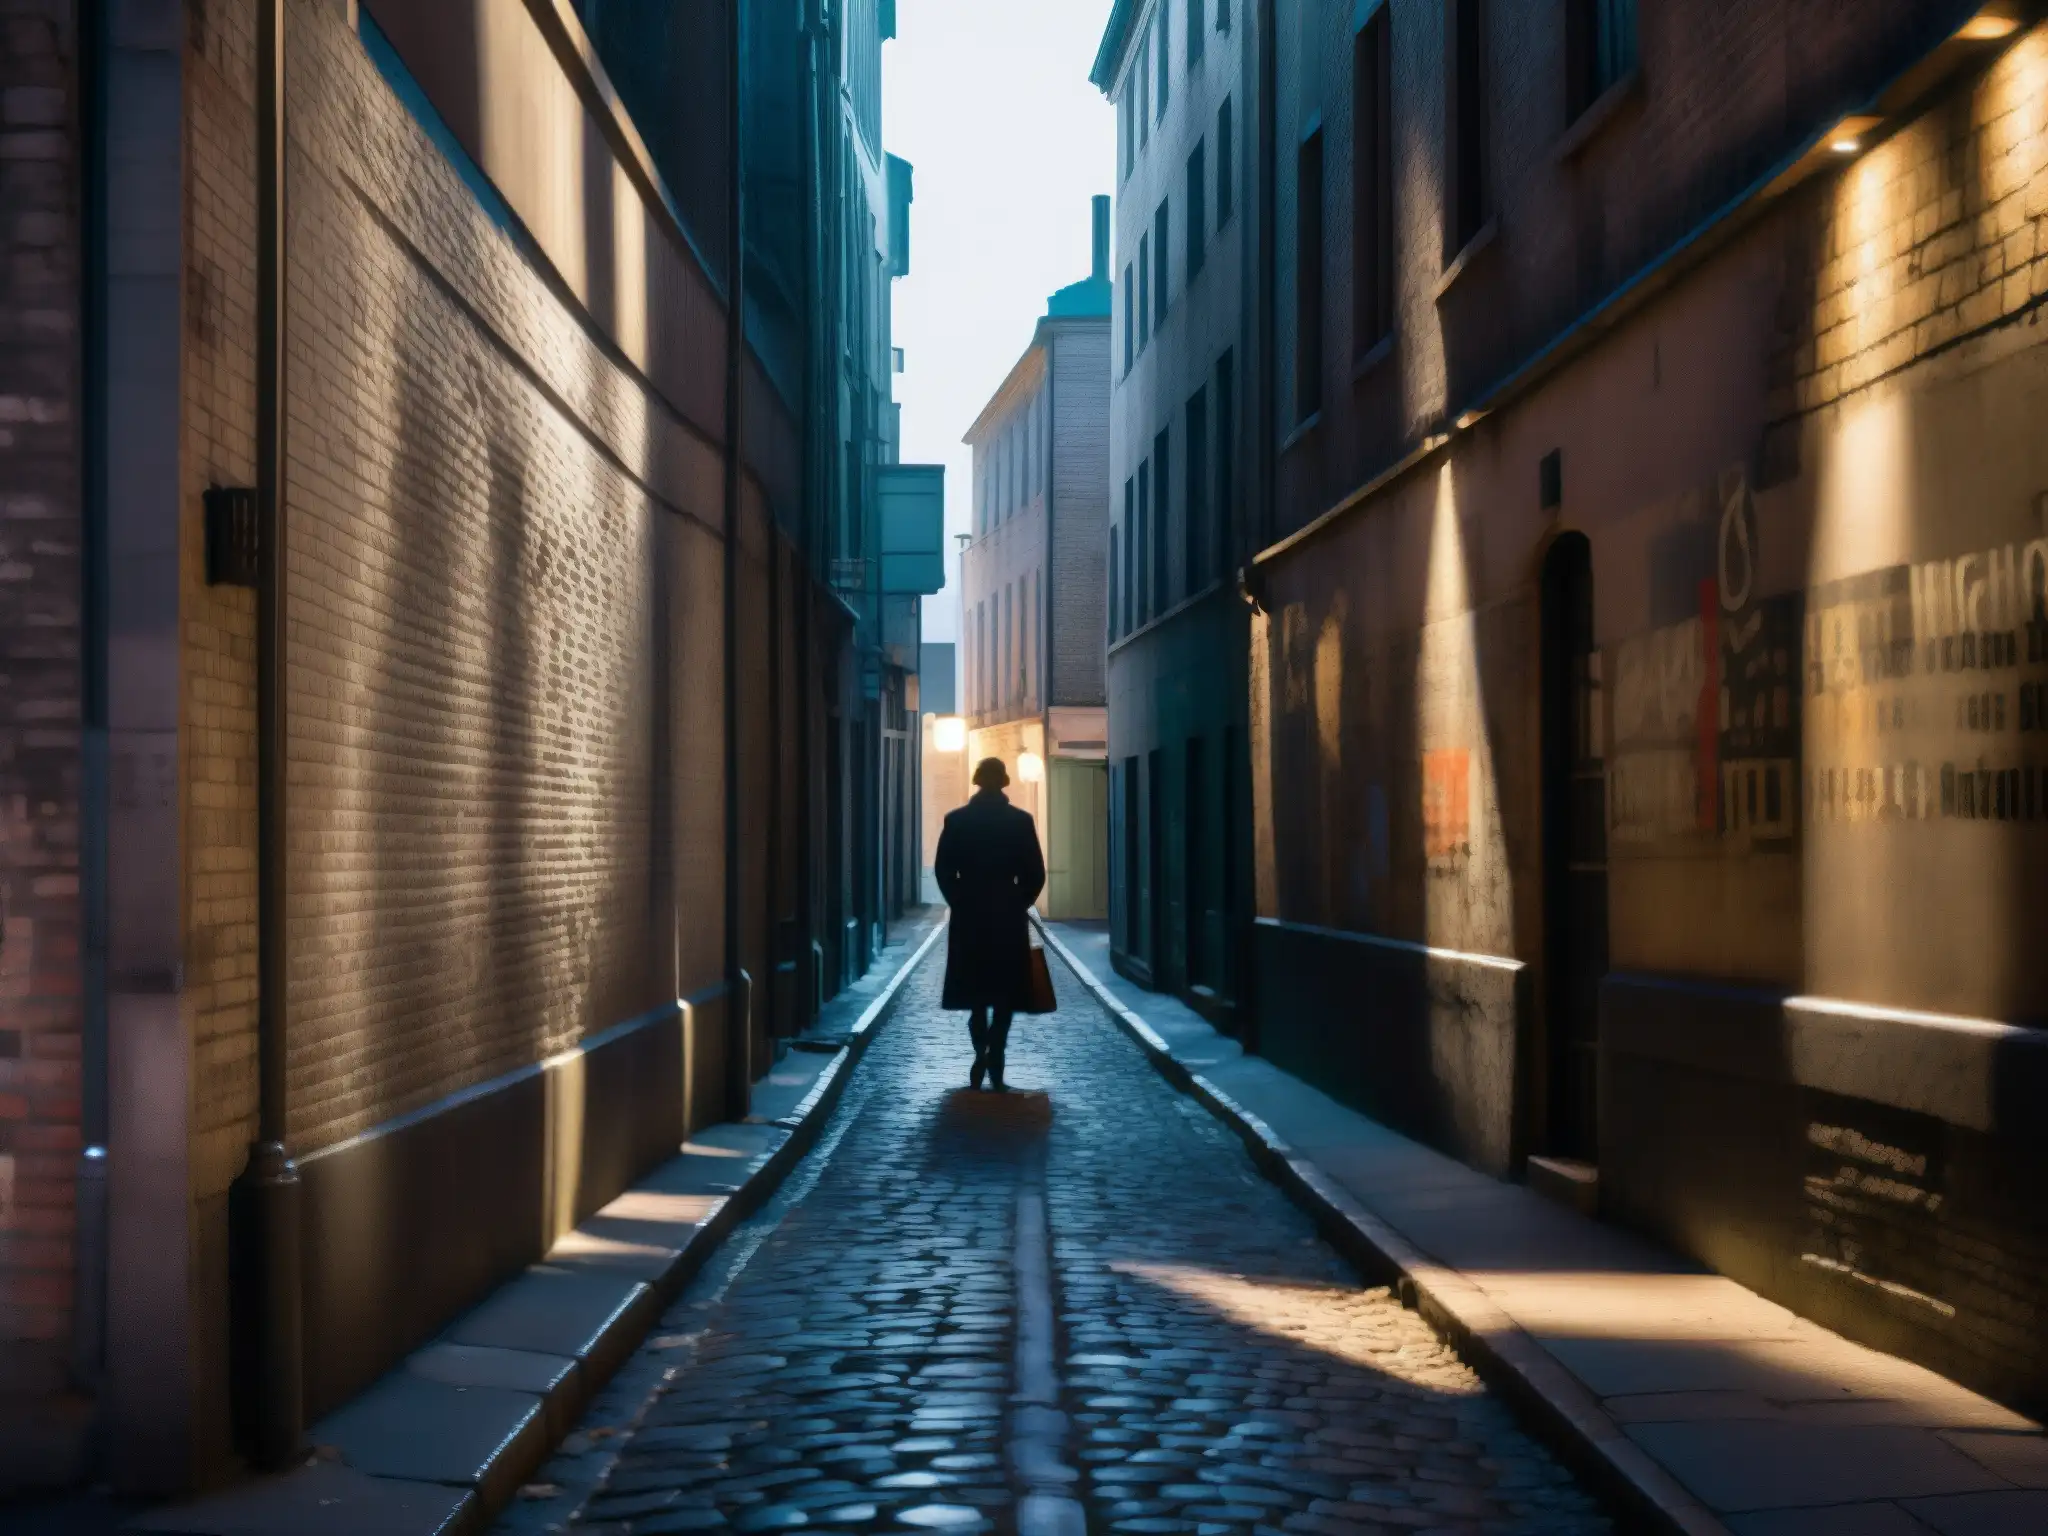 Alleyway misterioso con graffitis, luces tenues y figura en sombras